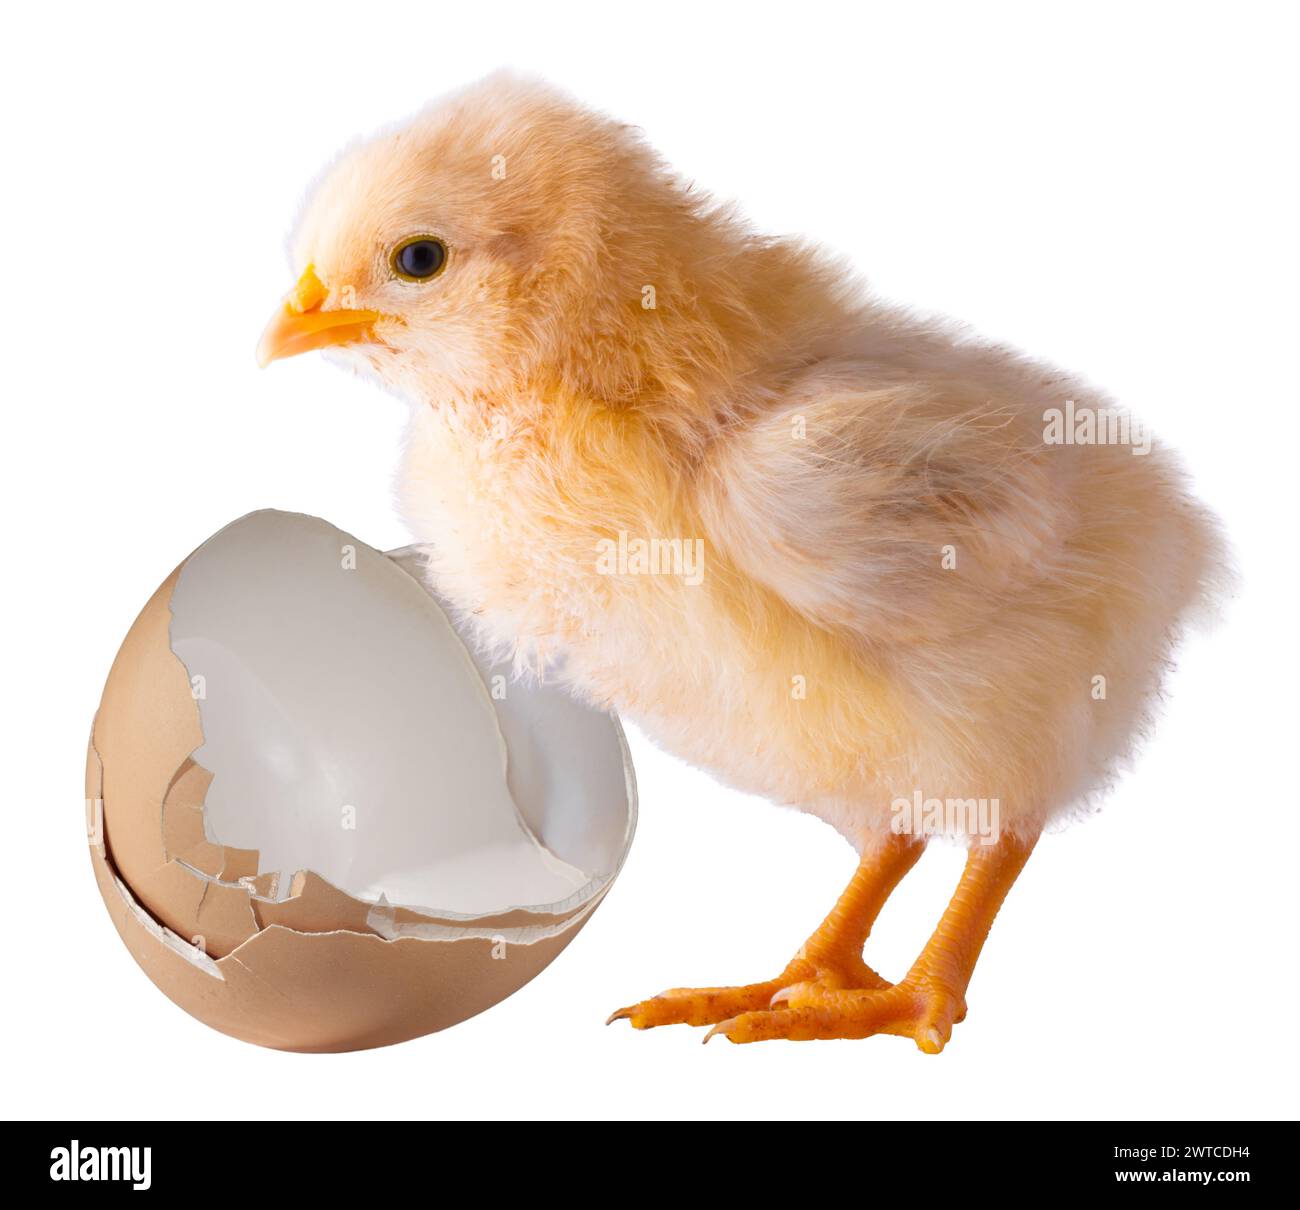 Buff Orpington pollo con un huevo roto aislado en una imagen de estudio. Foto de stock